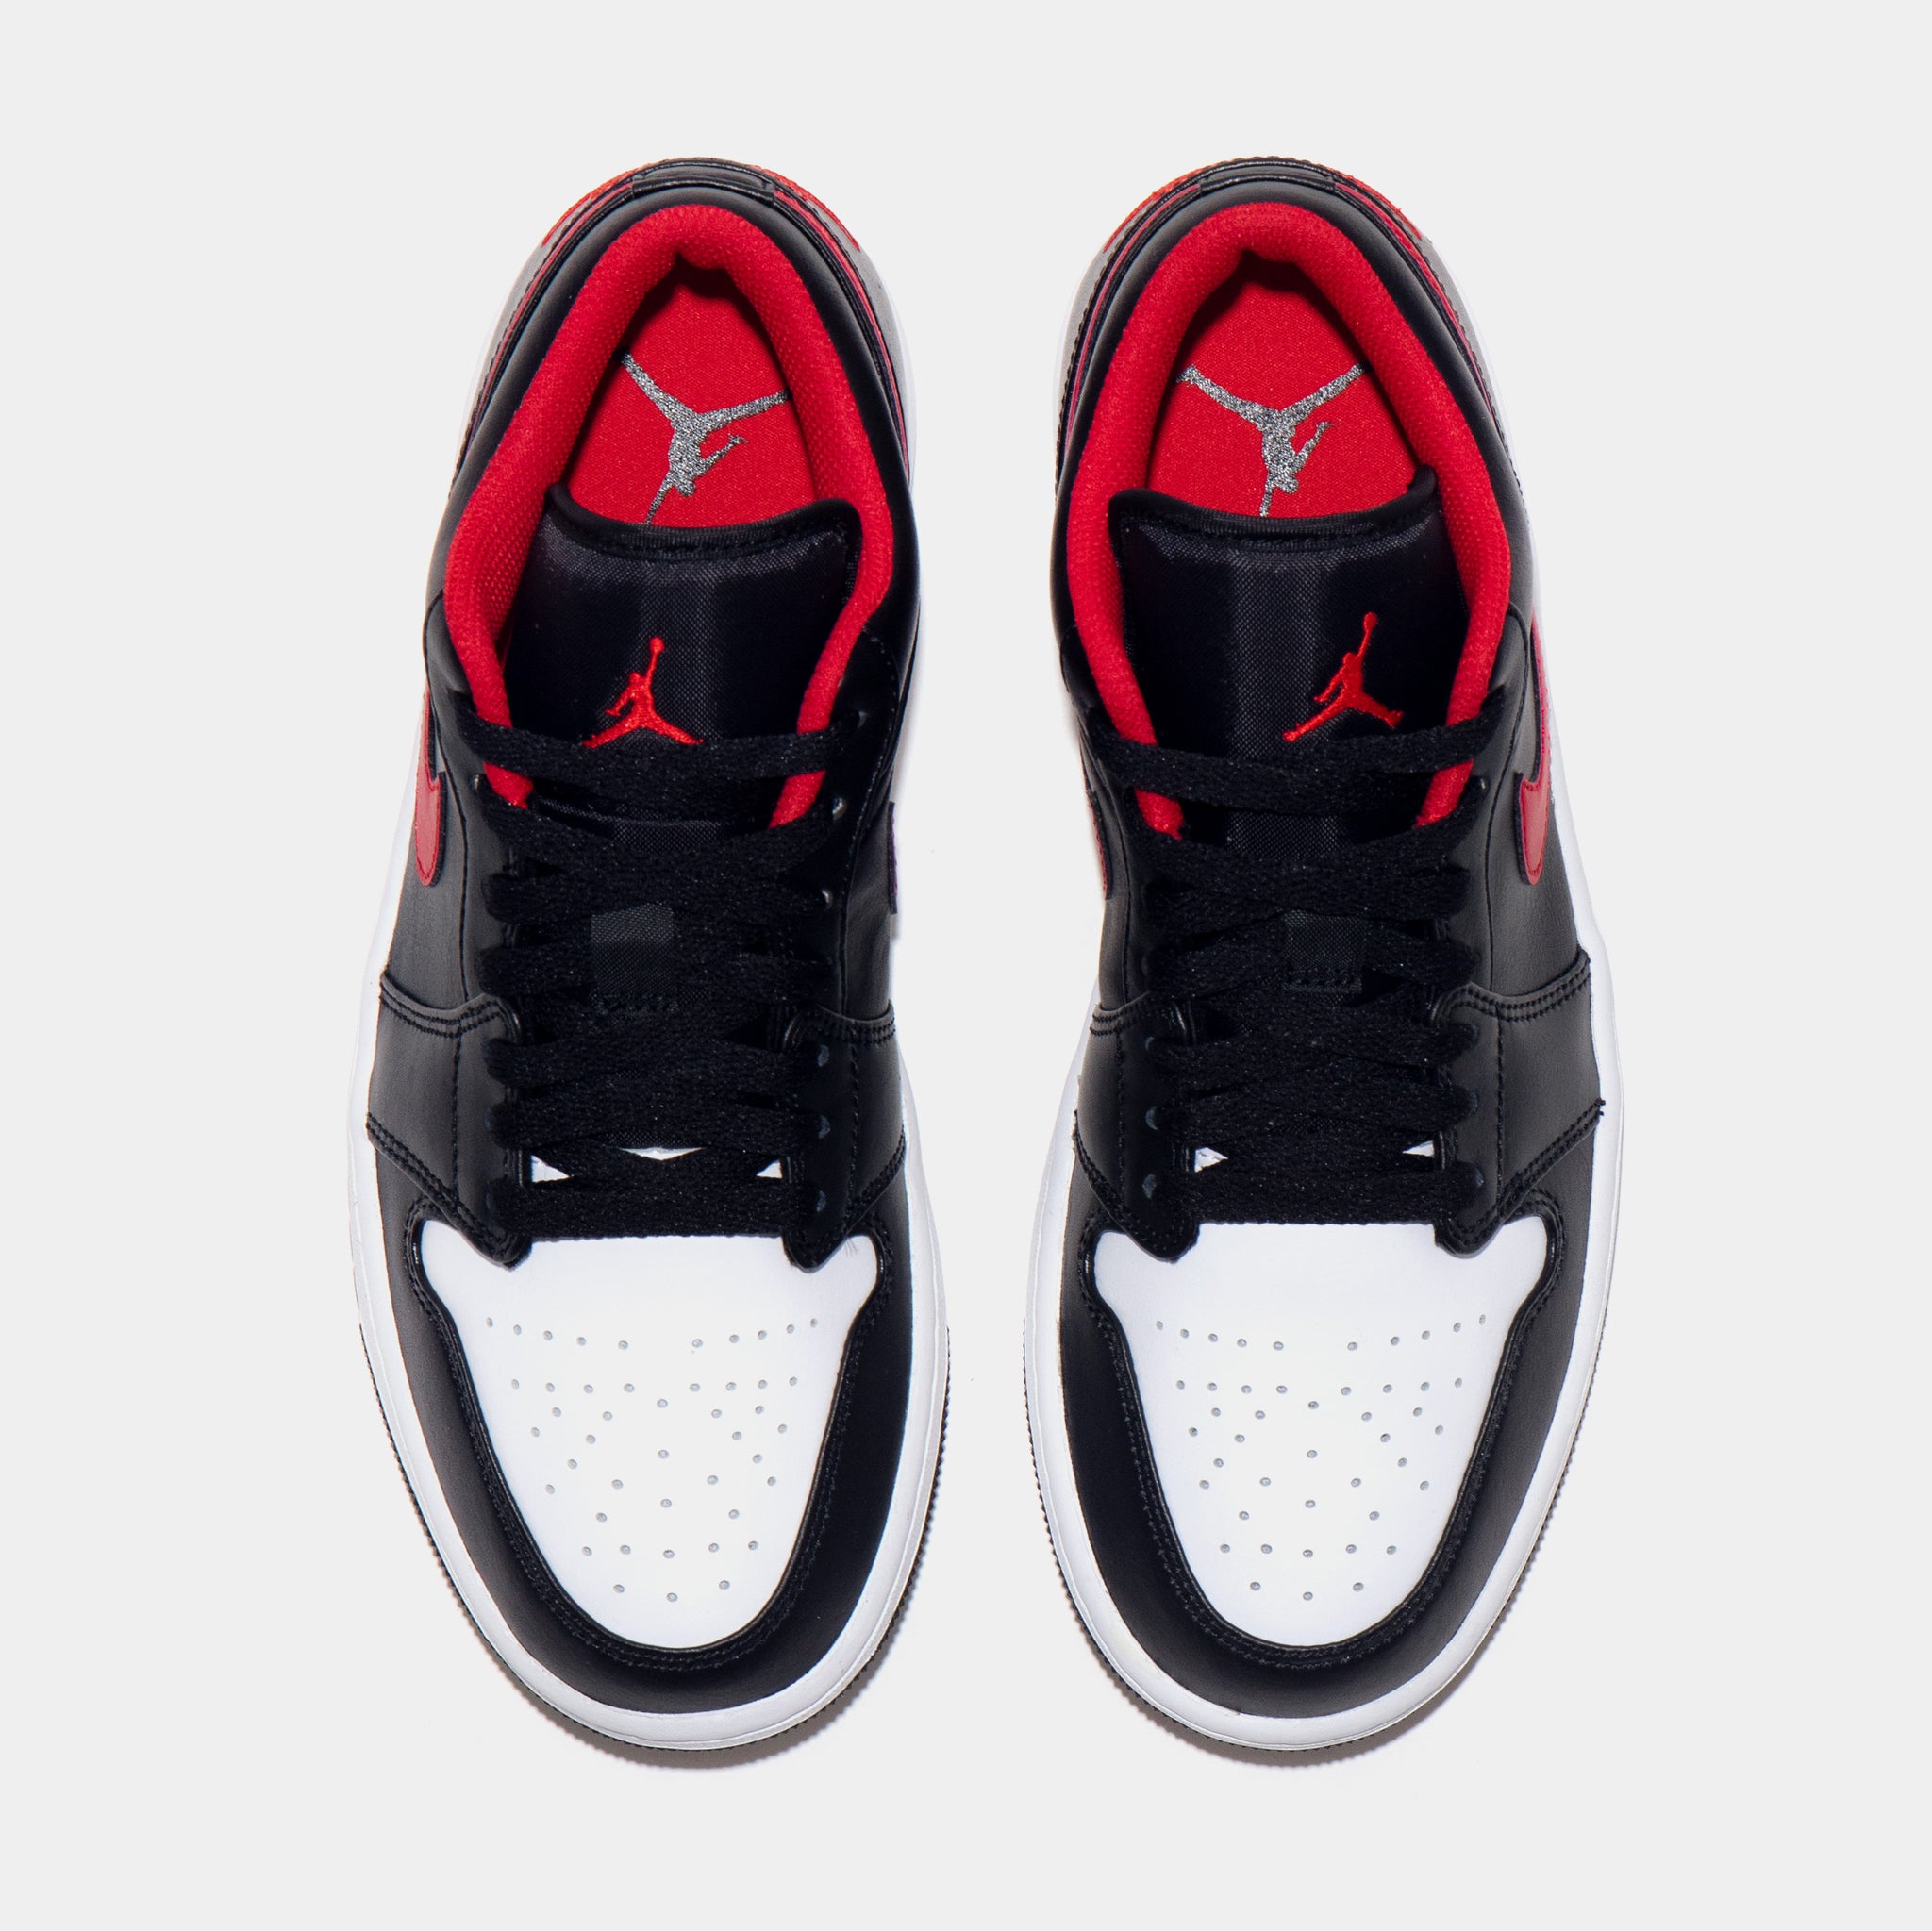 Air Jordan 1 Low Men's Shoes.